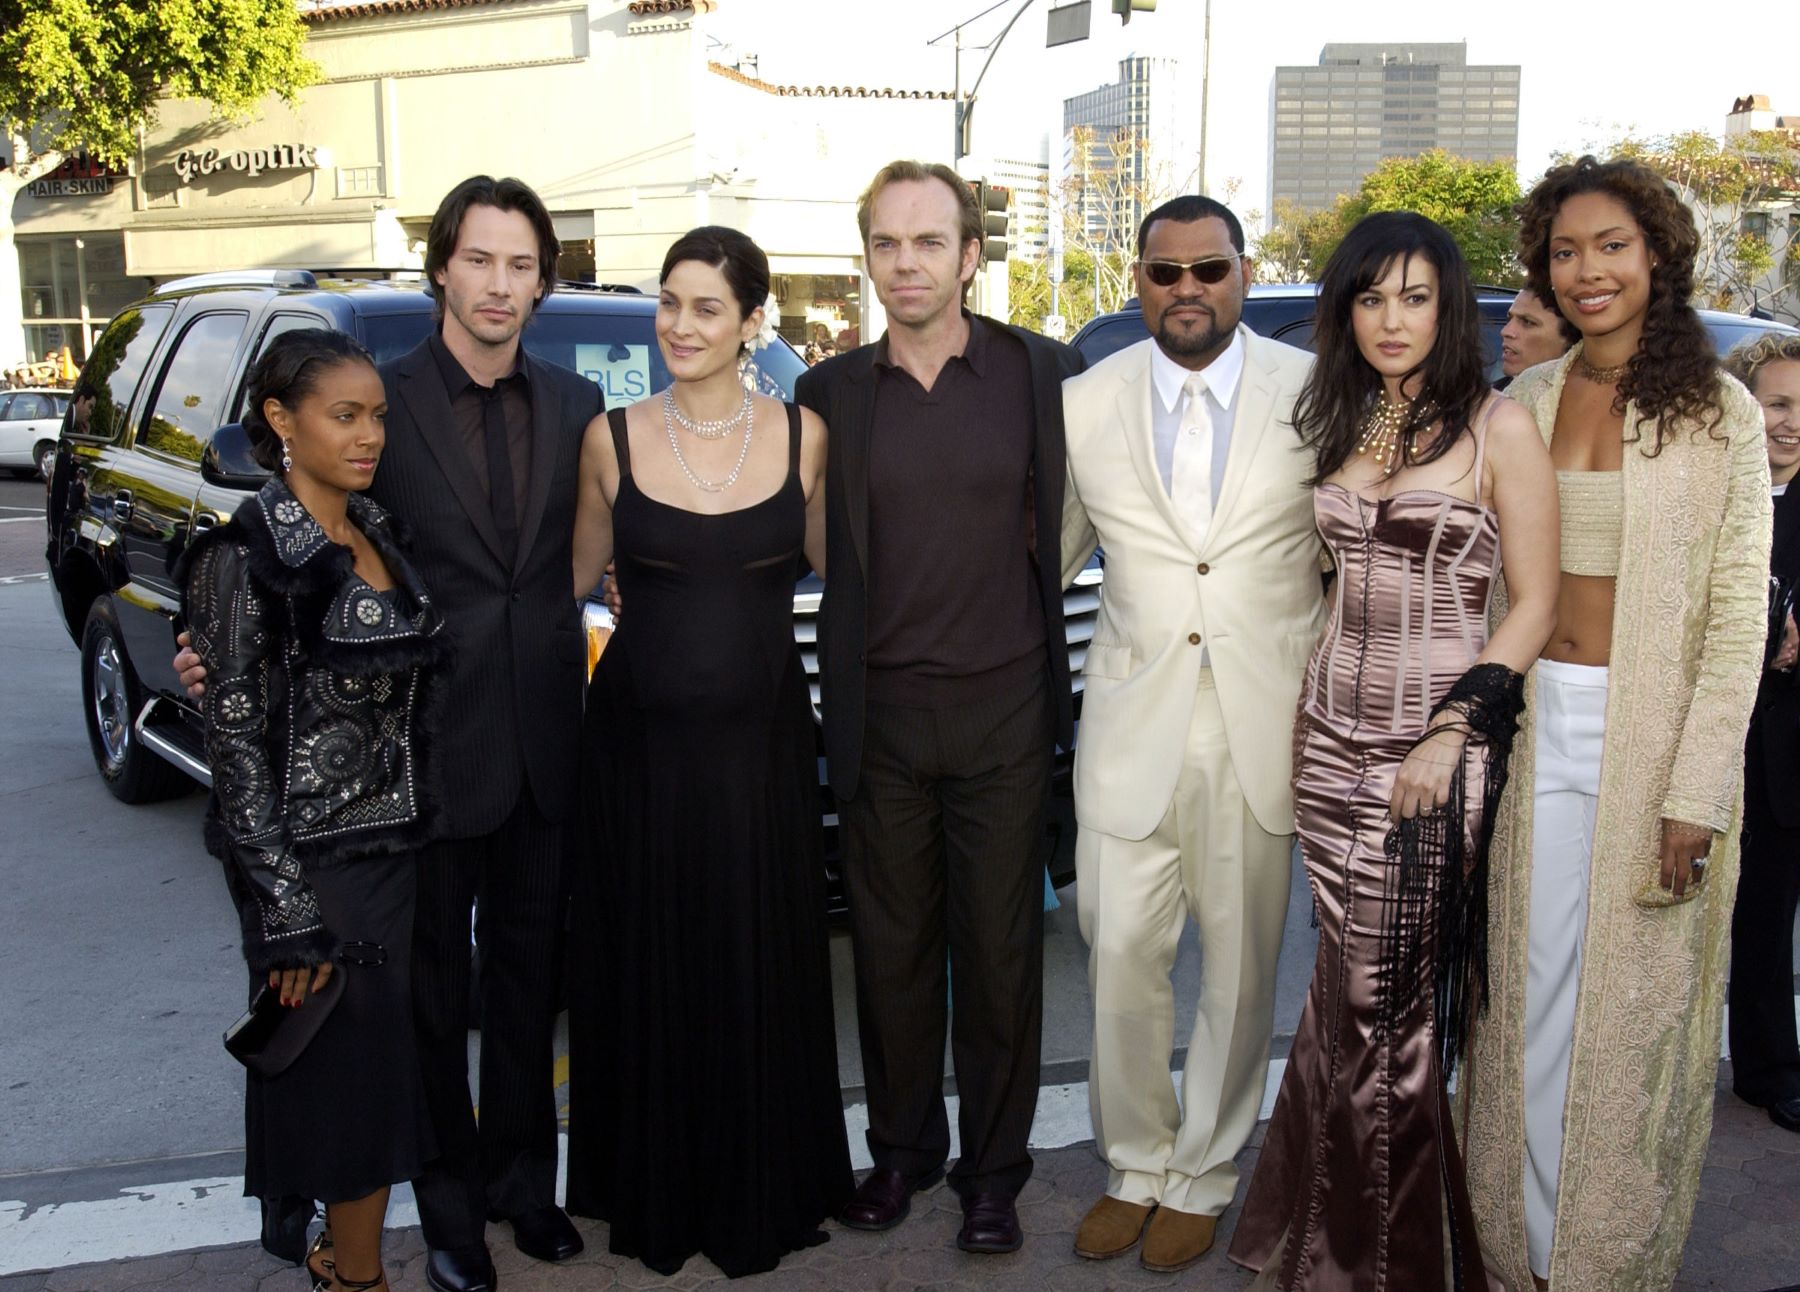 'The Matrix Reloaded' cast attending a black carpet premiere